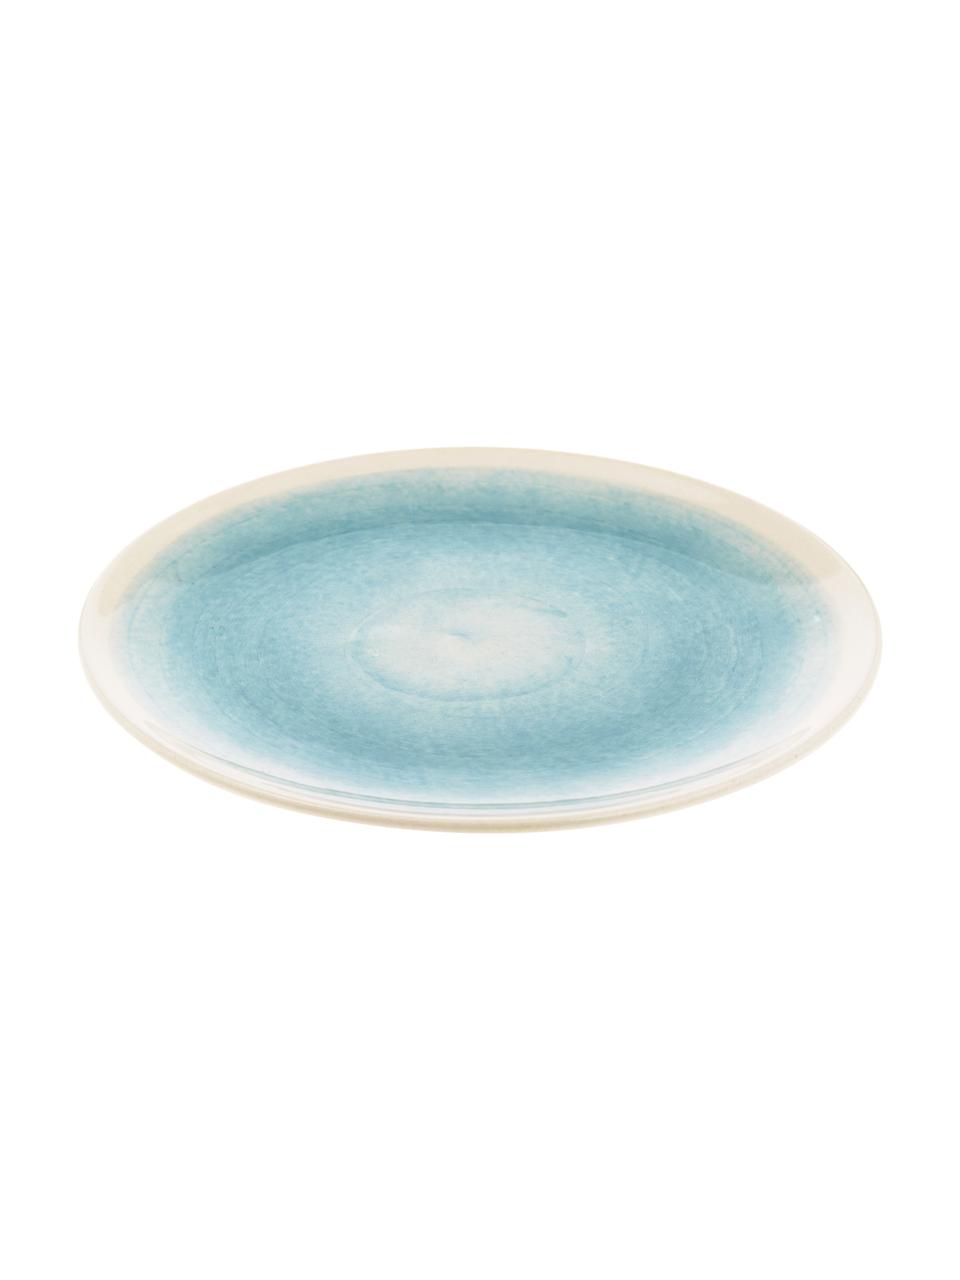 Handgemachte Frühstücksteller Pure matt/glänzend mit Farbverlauf, 6 Stück, Keramik, Blau, Weiß, Ø 21 cm